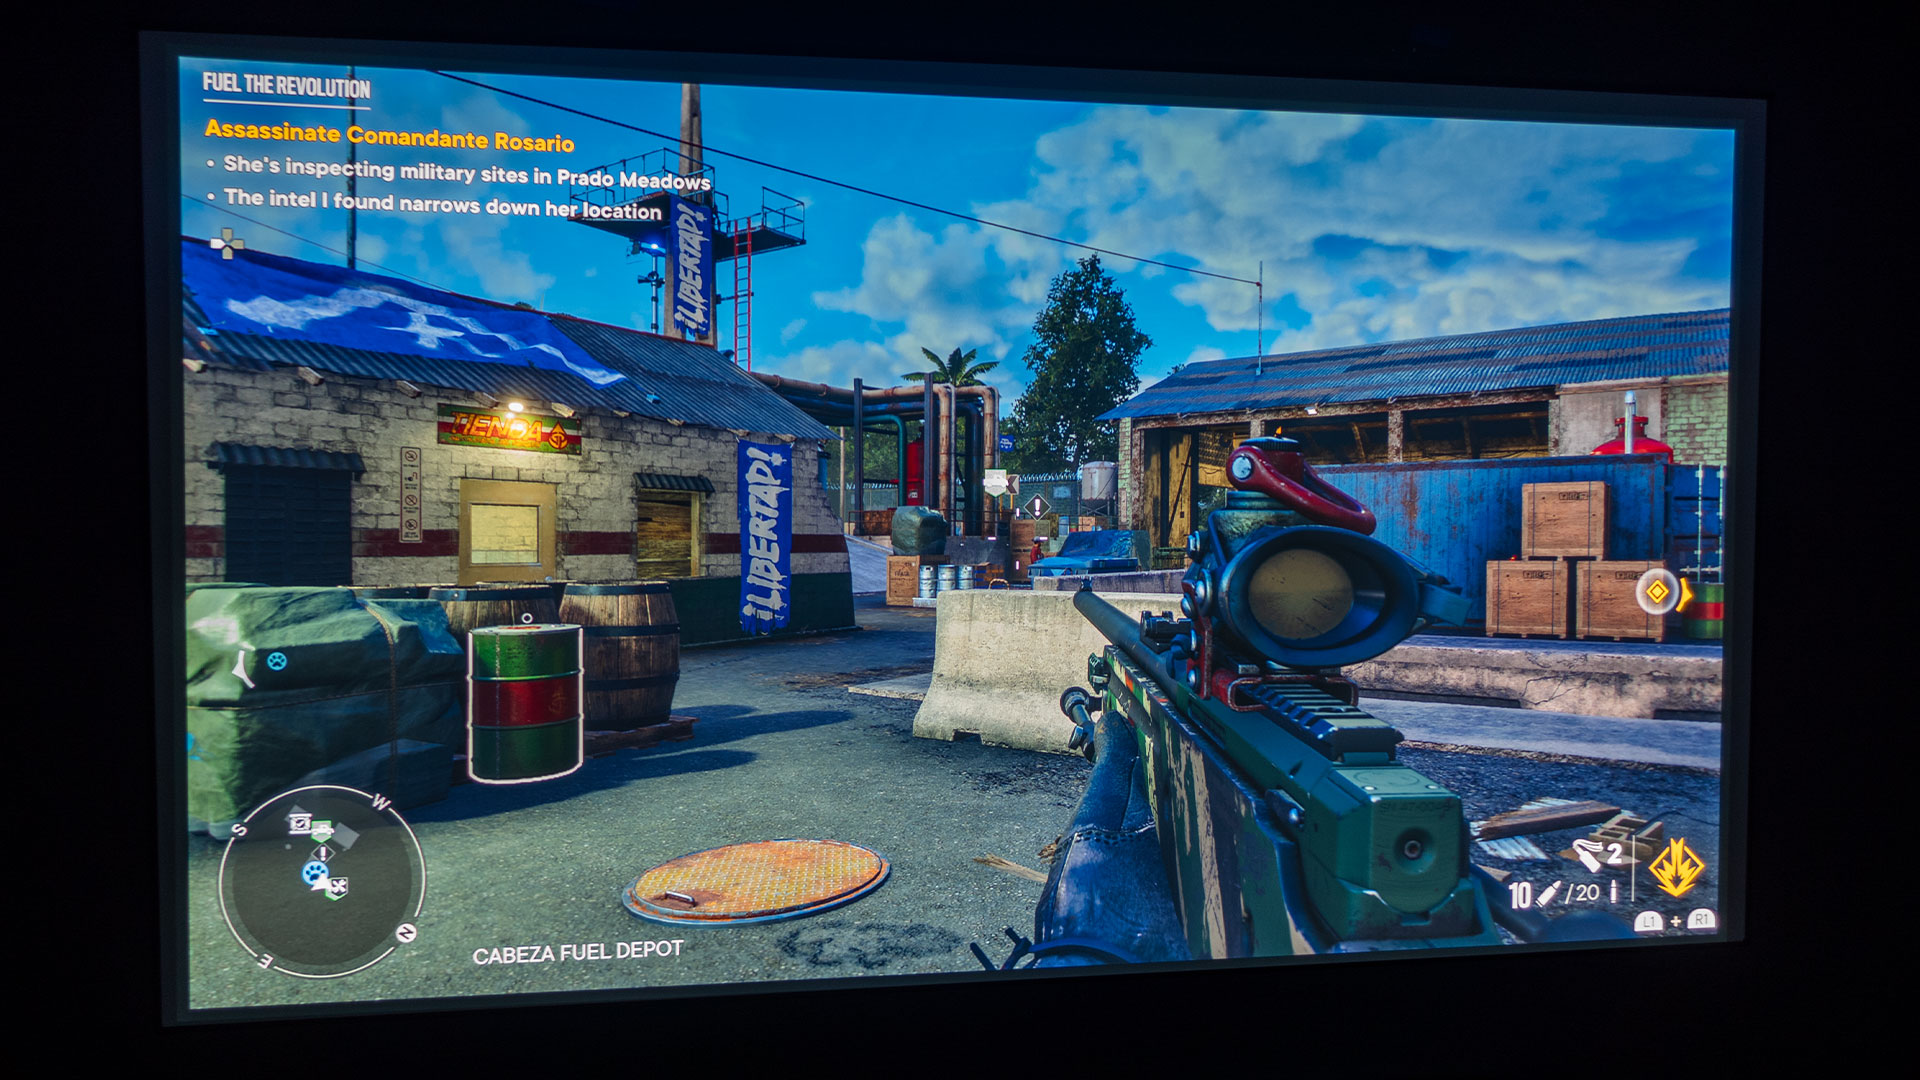 Far Cry 6 is finally getting a gameplay demo soon - EGM